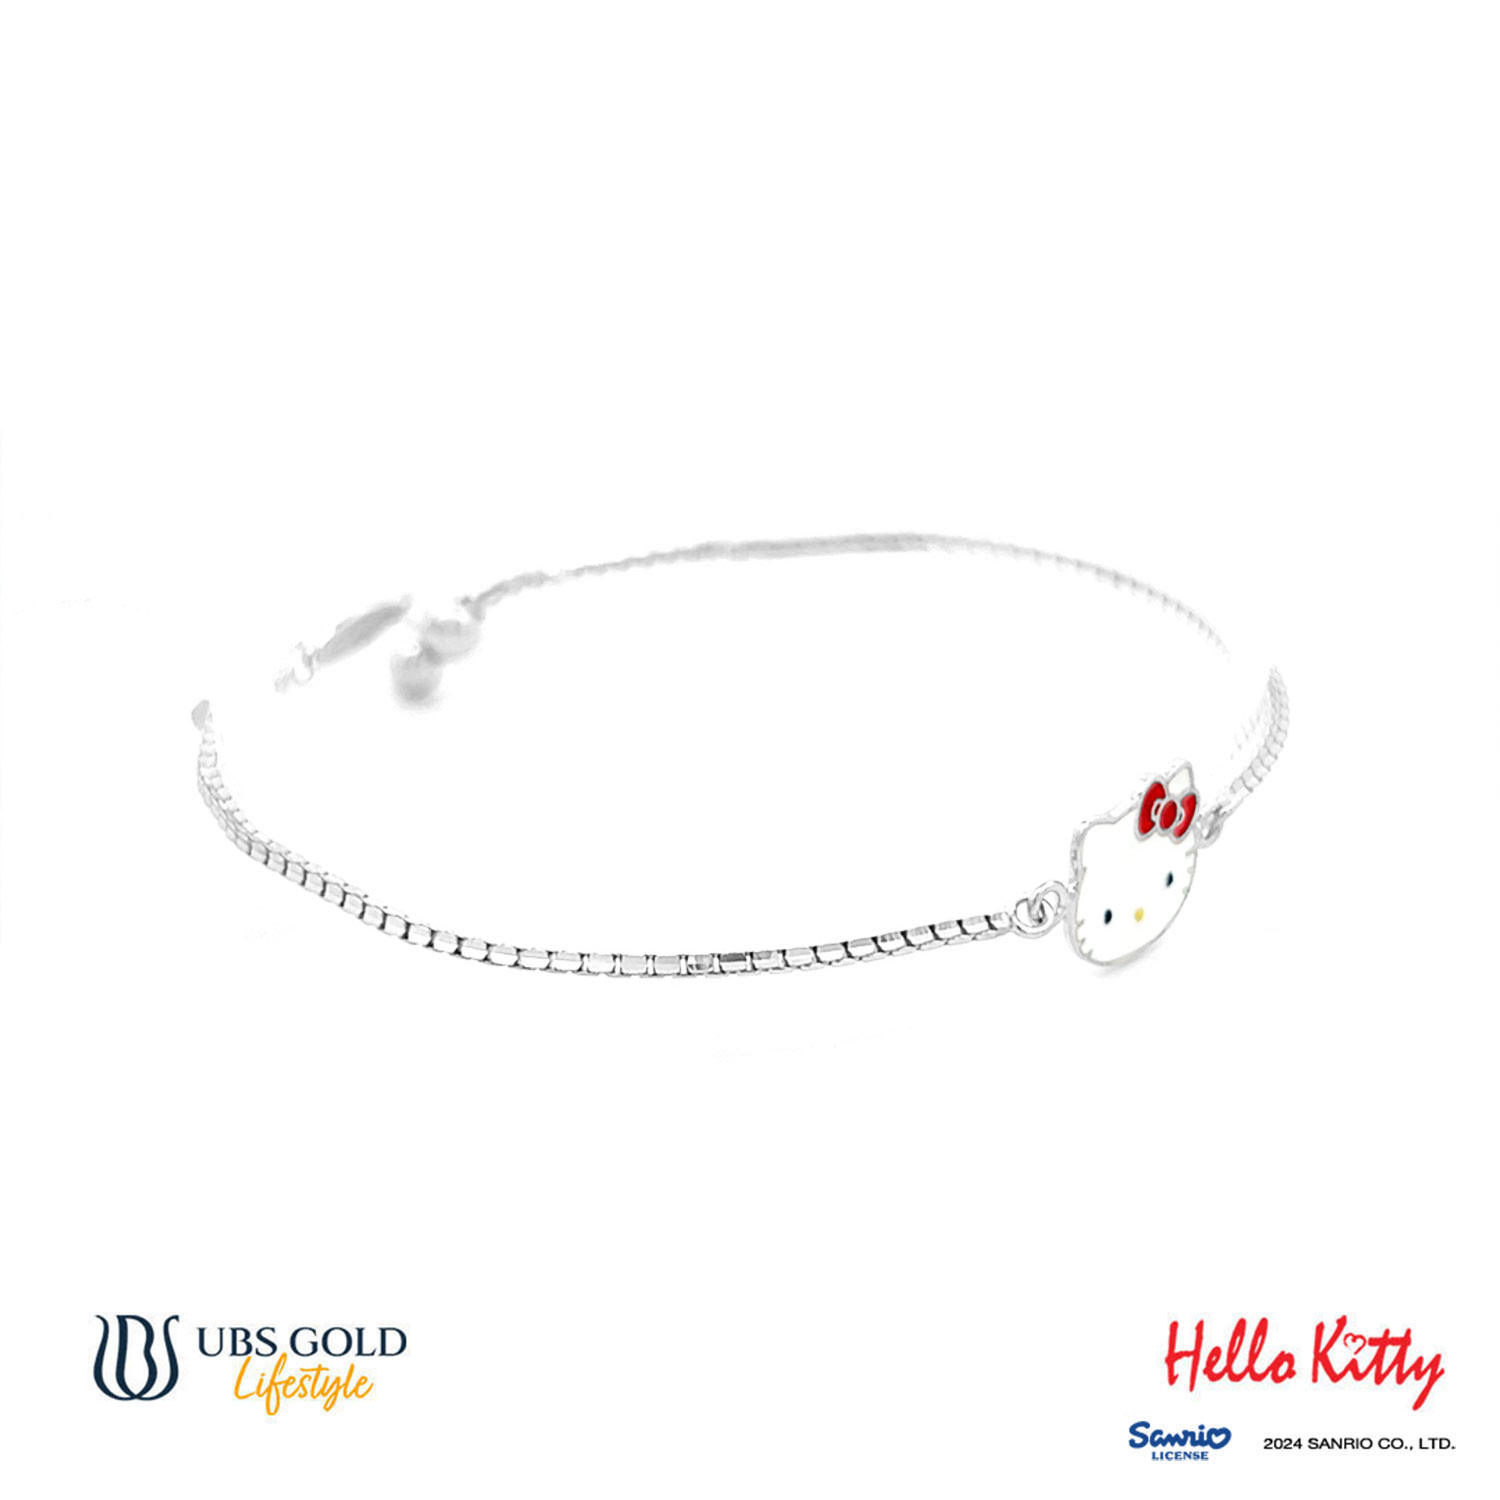 UBS Gold Gelang Emas Sanrio Hello Kitty - Kgz0008 - 17K